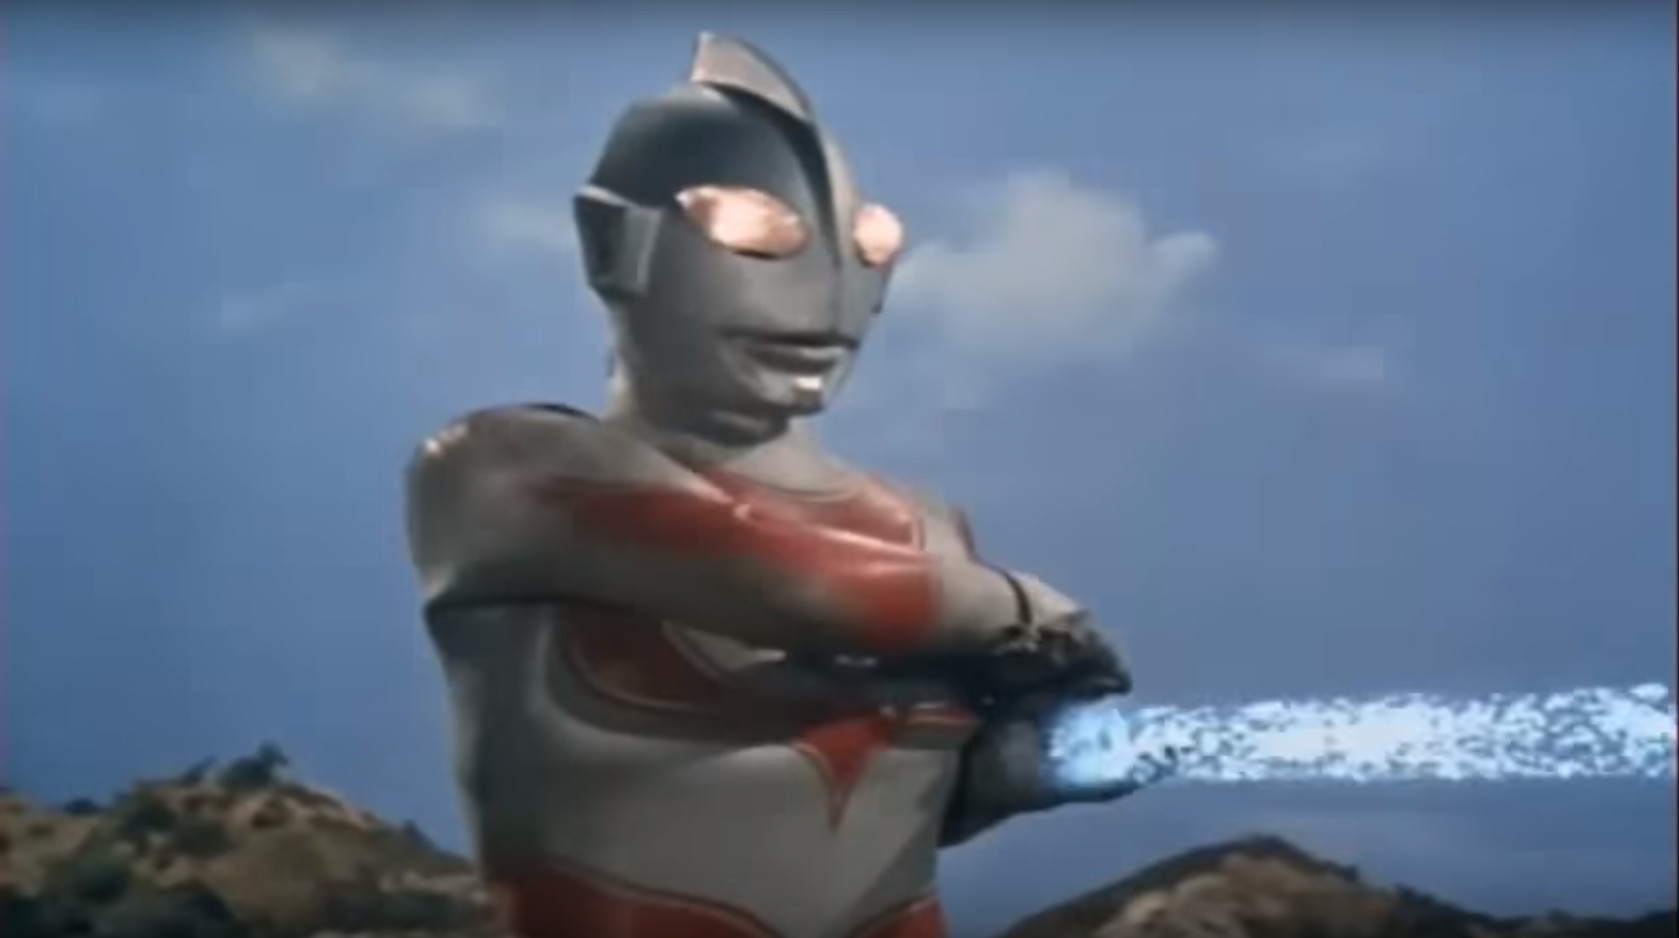 8800 Foto Penampakan Ultraman Asli Terbaru